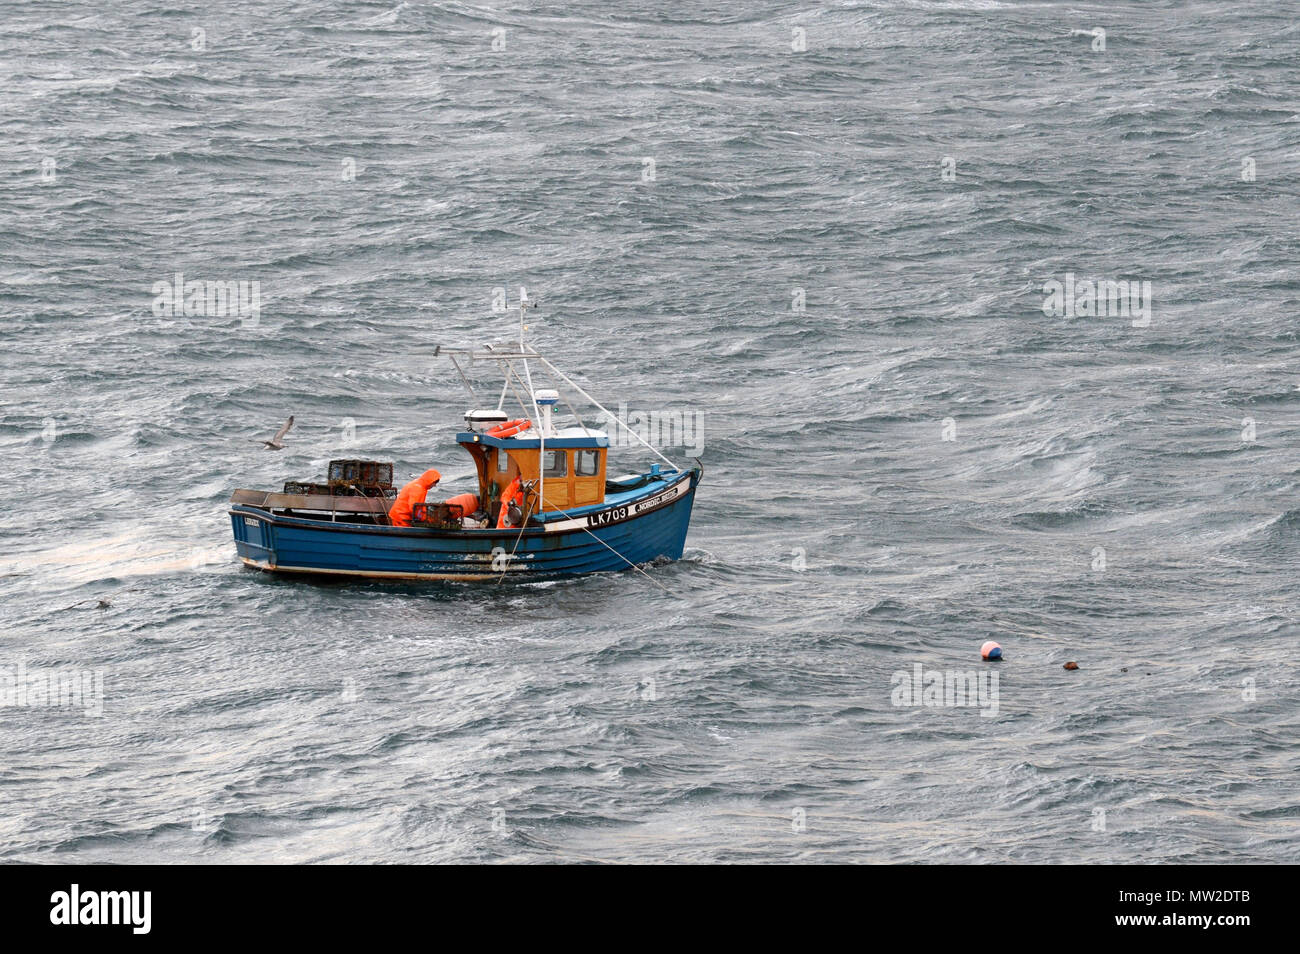 Piccola barca da pesca in mare con 2 equipaggi a bordo di prelievo di aragosta ceste cantra pot Foto Stock